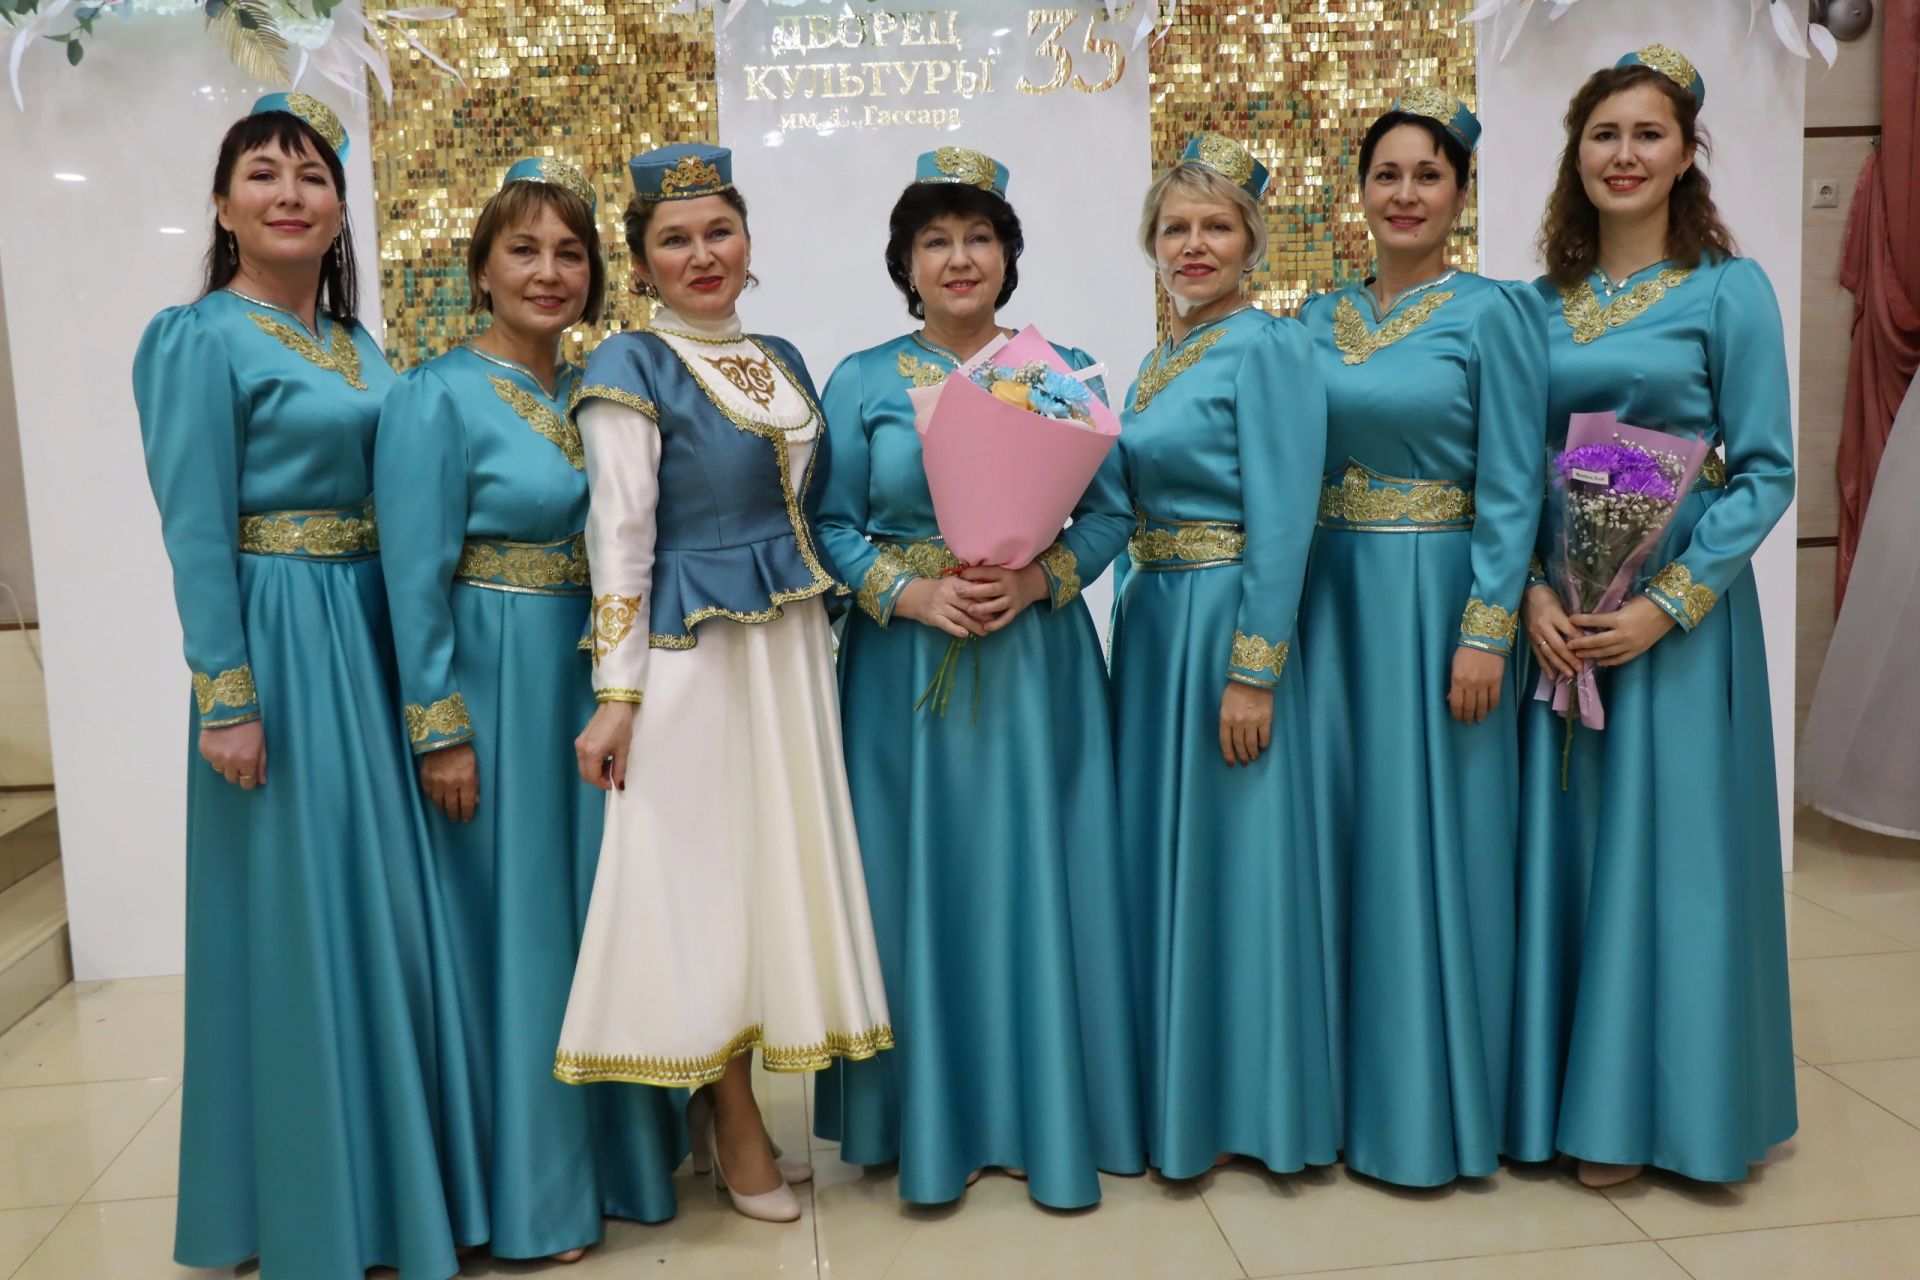 Дворец культуры имени С. Гассара Менделеевска в кругу друзей отпраздновал 35-летие